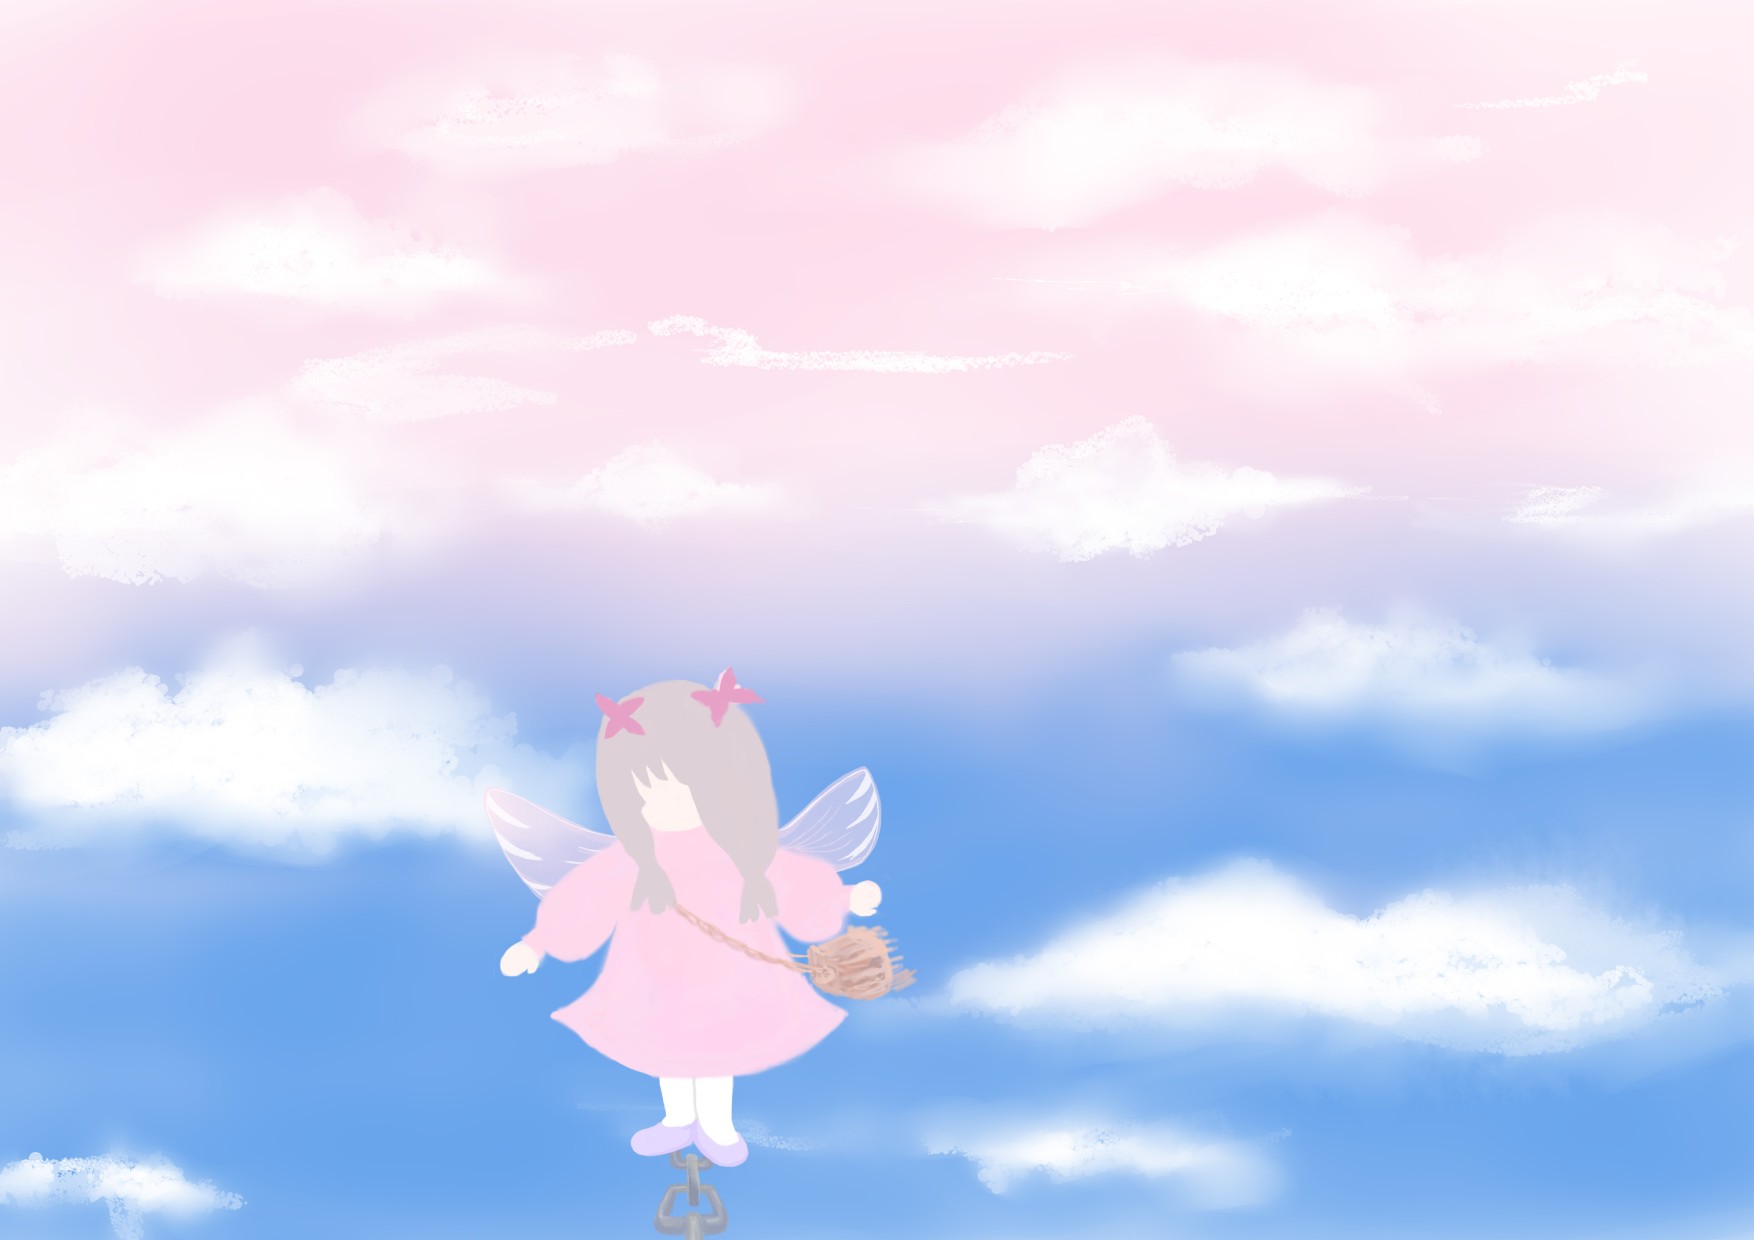 空中漫步的小天使原创天空插画壁纸